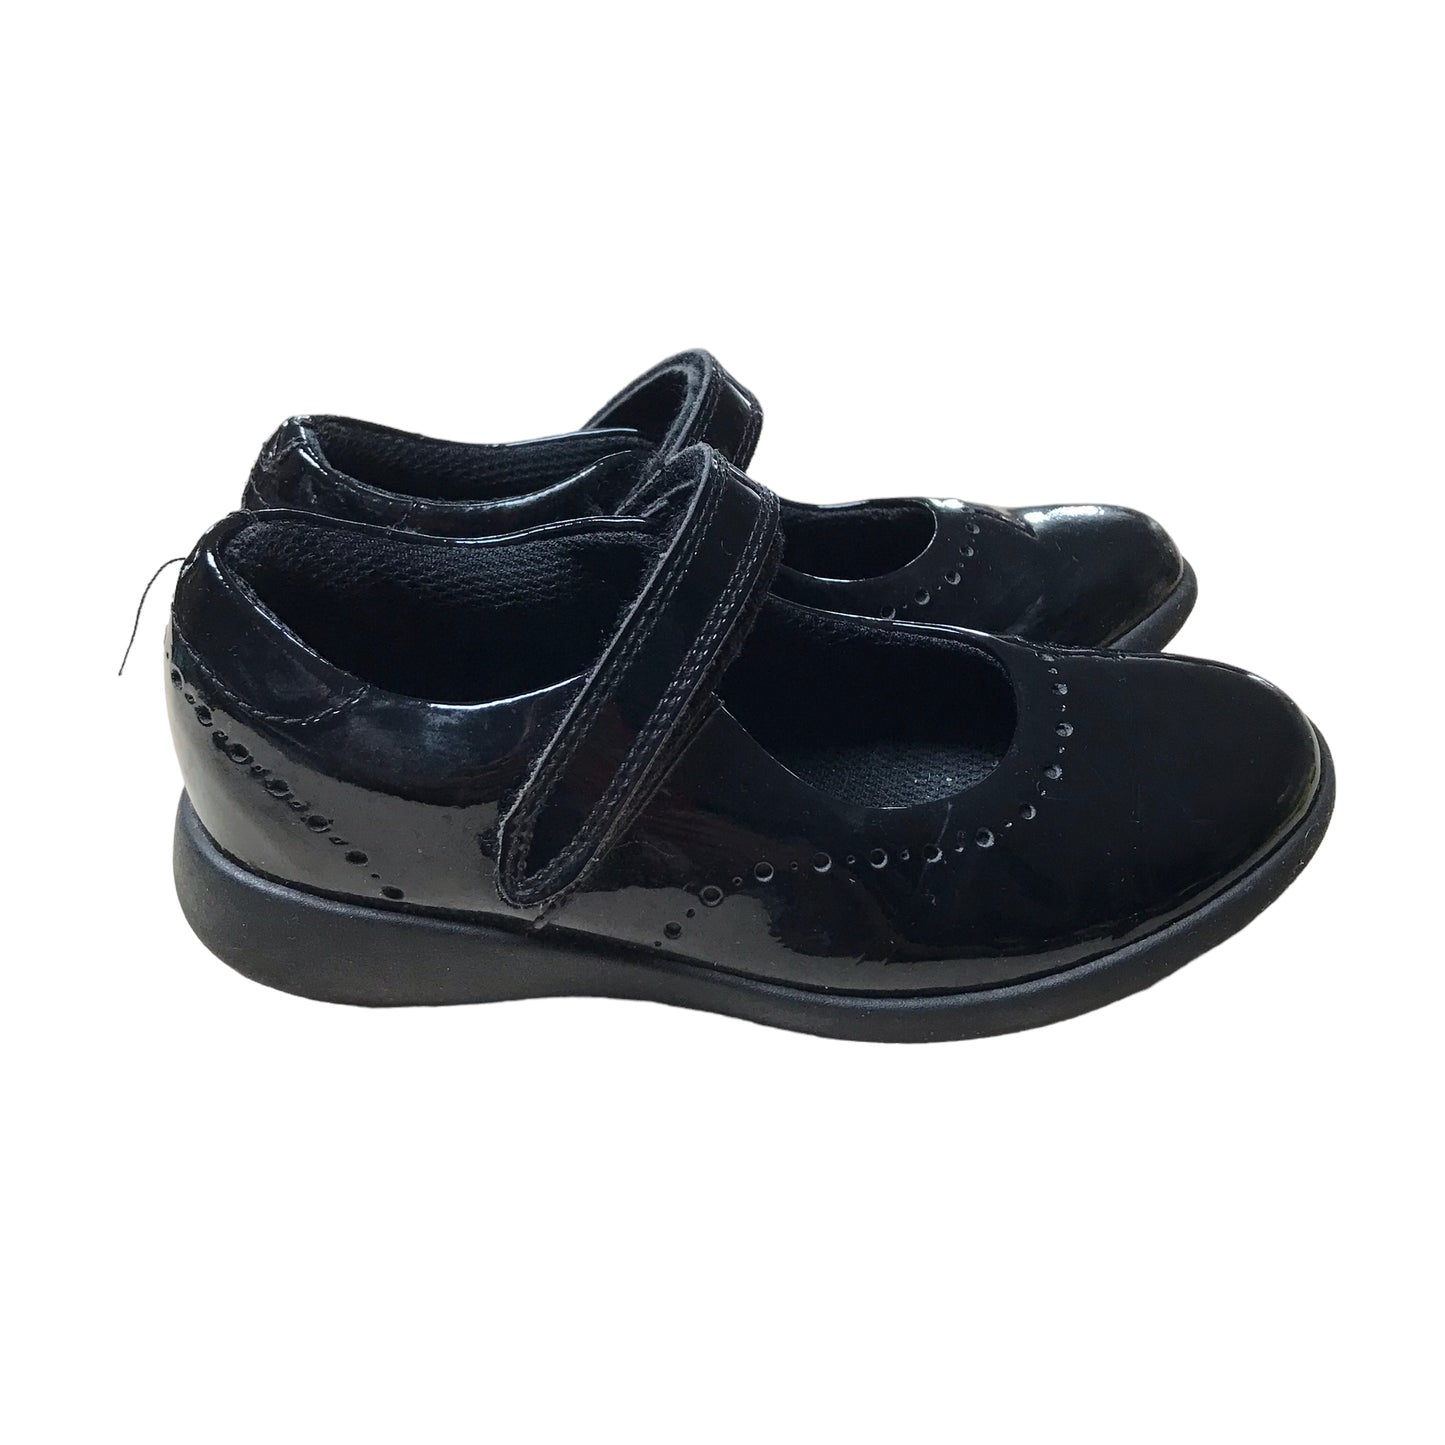 Clarks Black School Shoes Shoe Size 11F junior